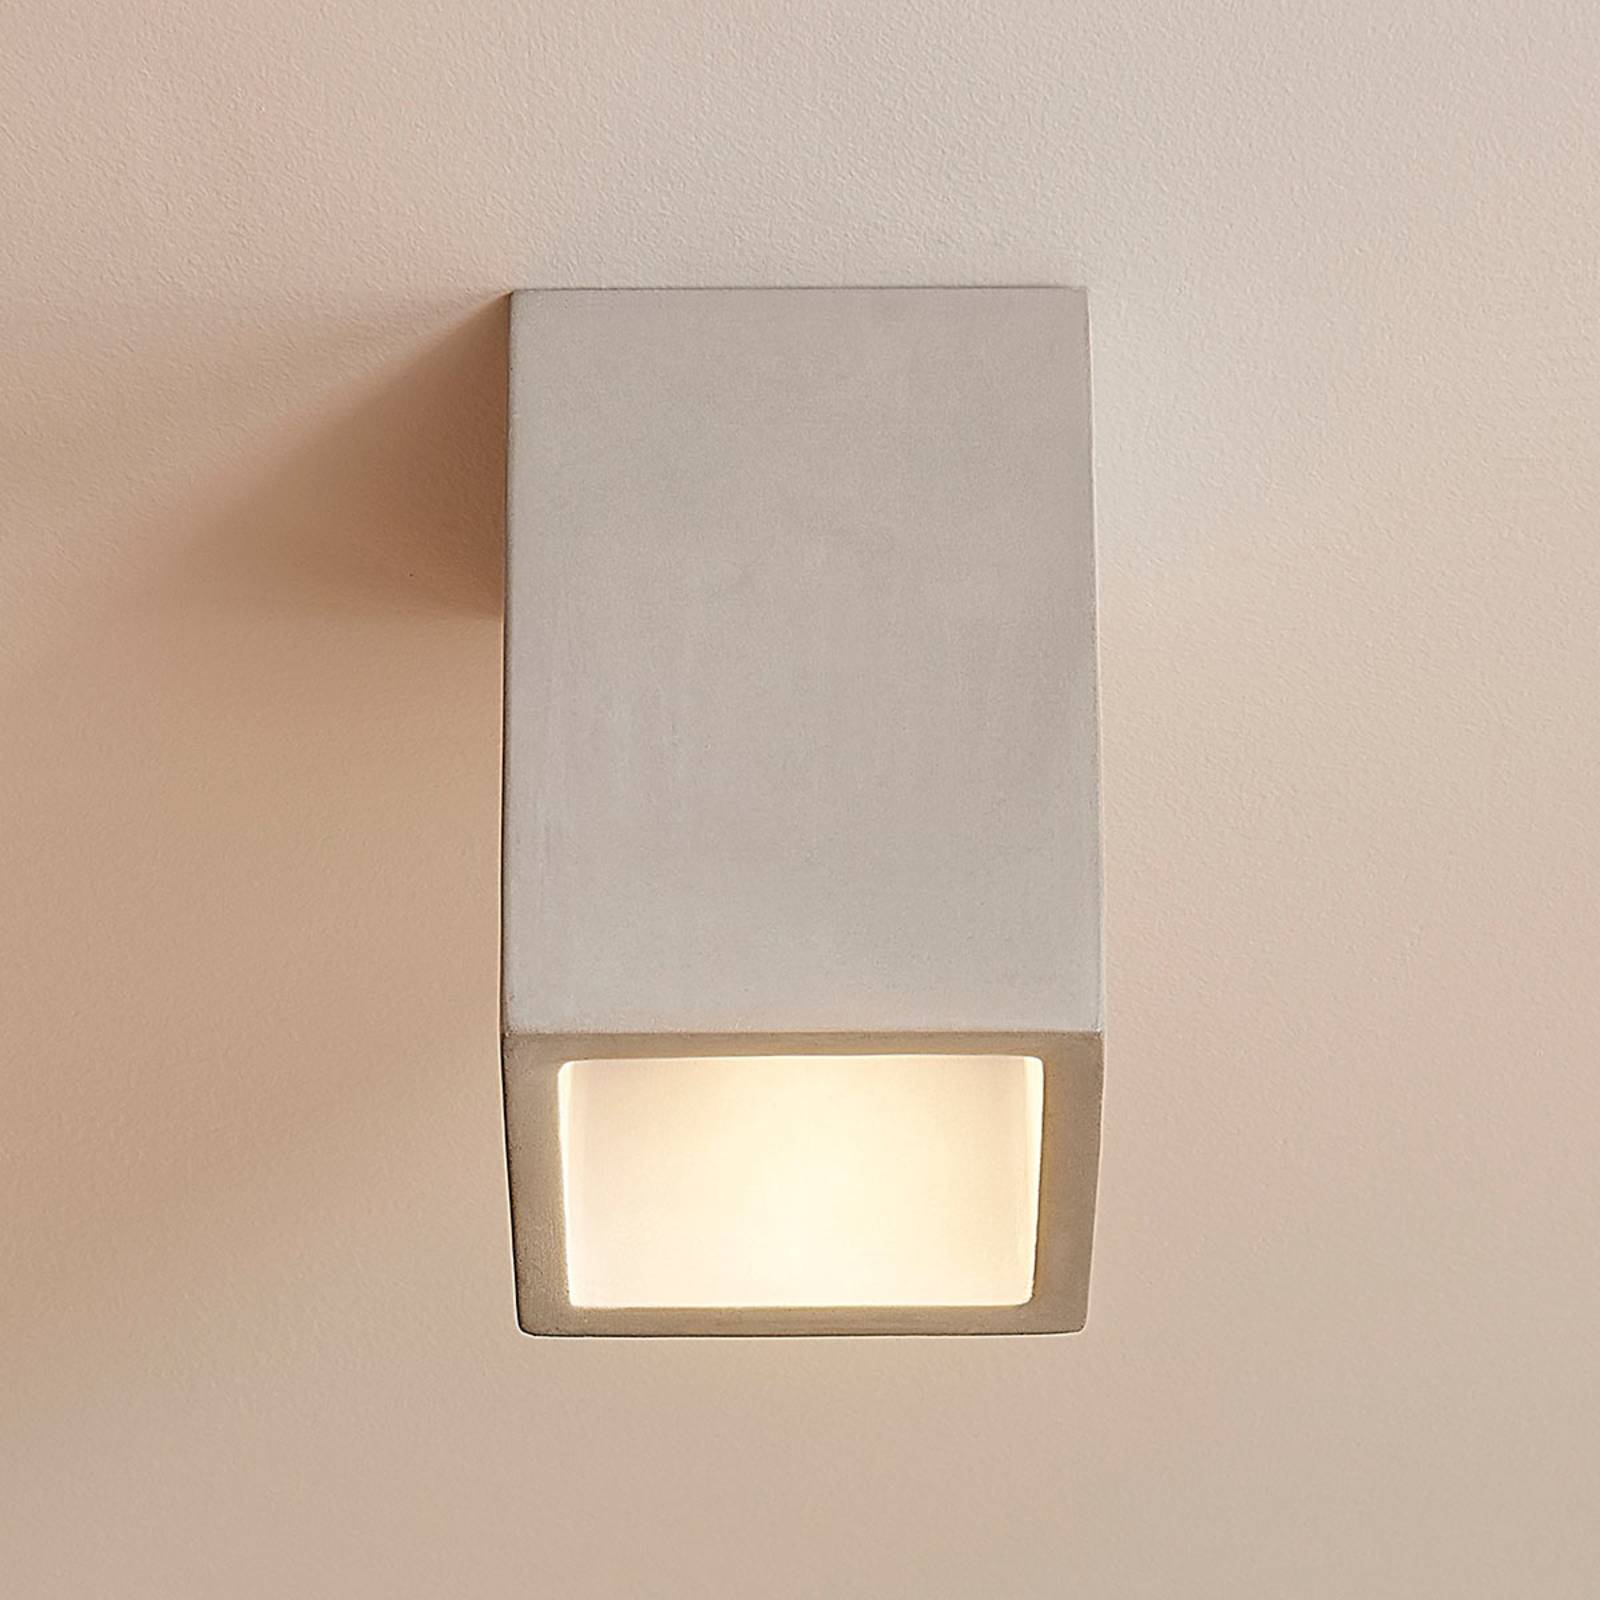 Beton loftlampe Gerda i firkantet form